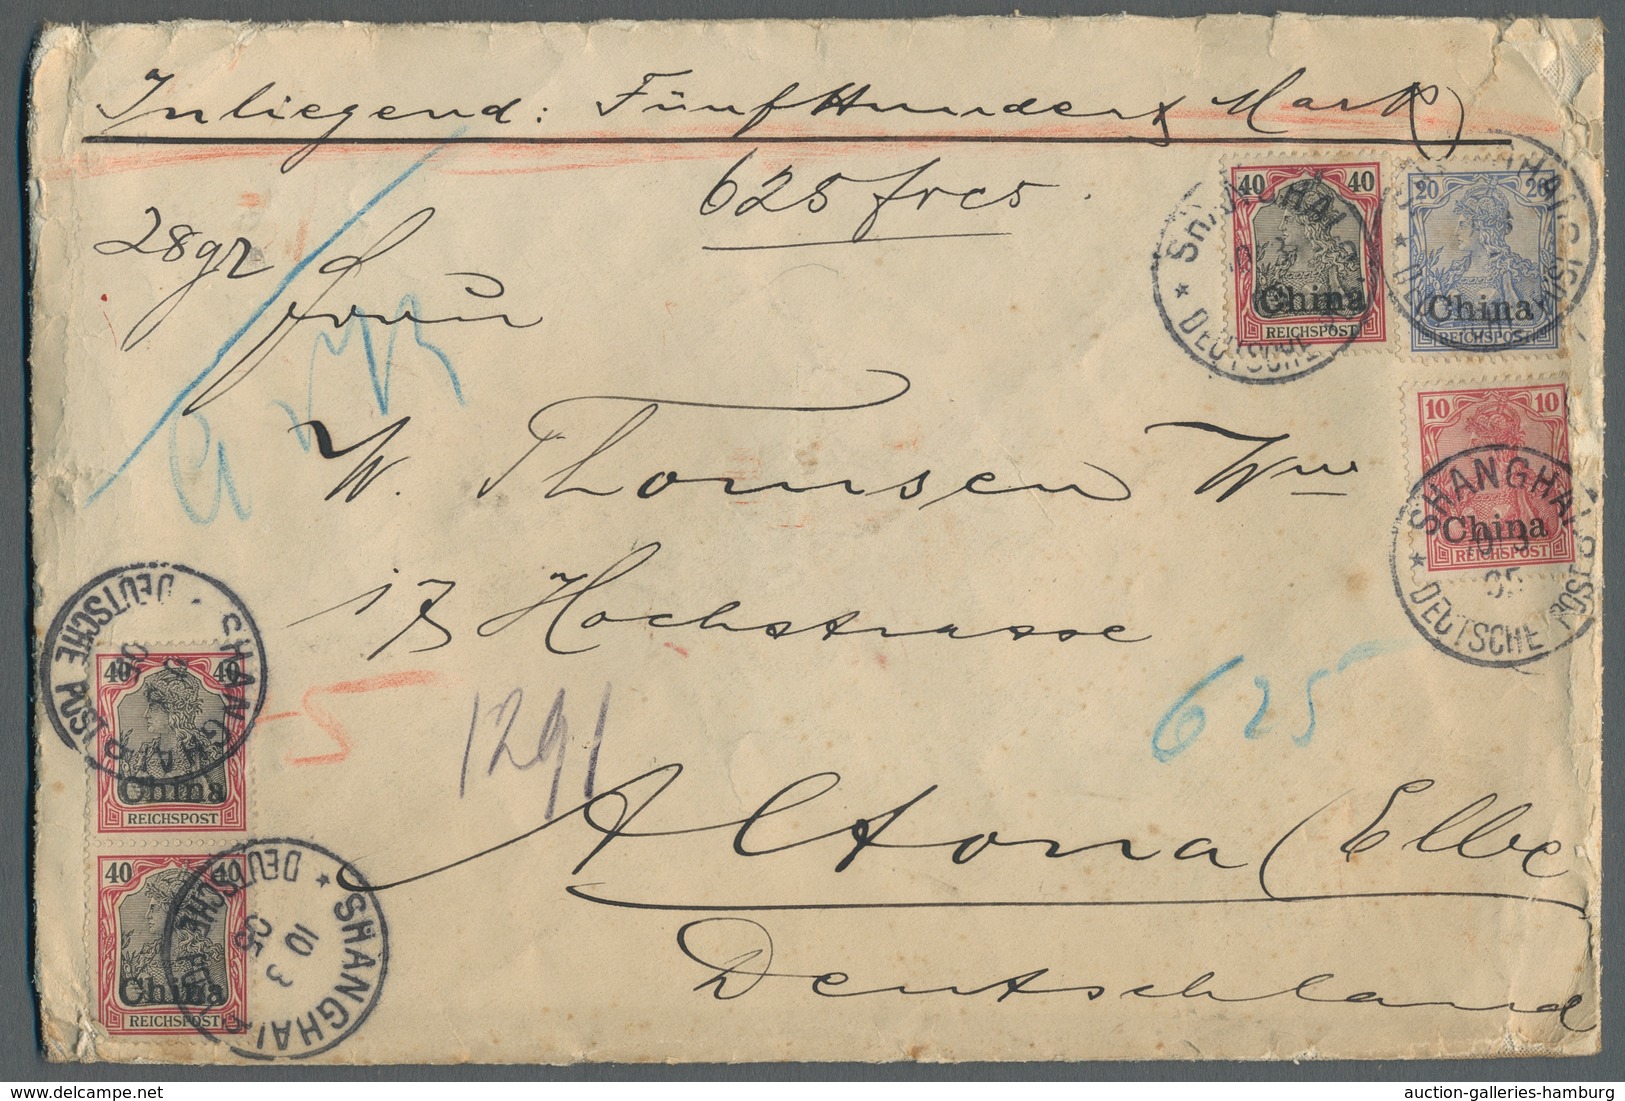 Deutsche Auslandspostämter + Kolonien: 1901-1905, Partie von 18 Belegen mit viel Deutscher Post in C